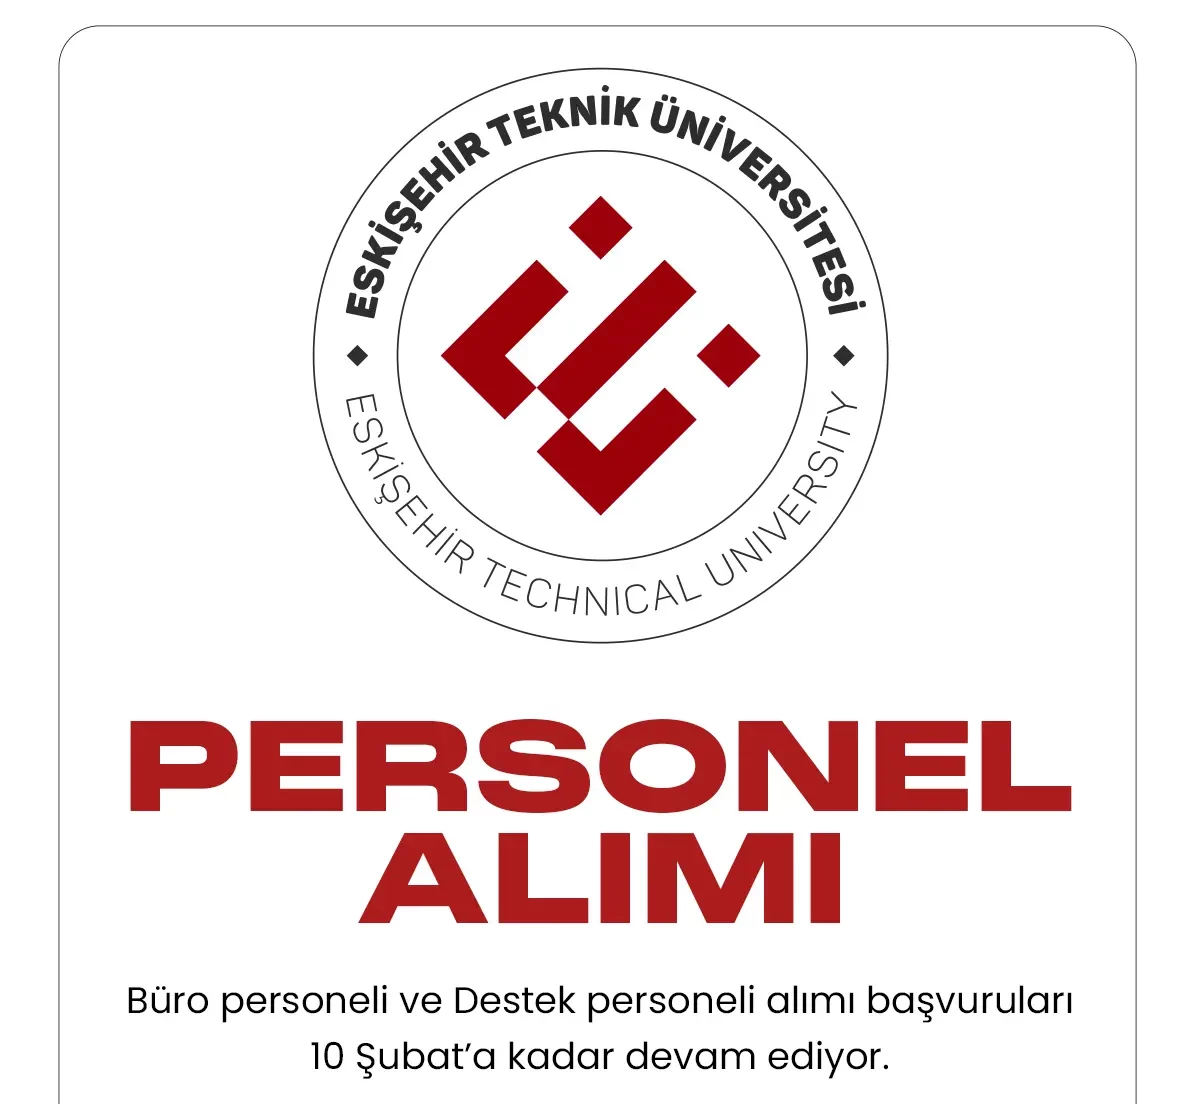 Eskişehir Teknik Üniversitesi personel alımı başvuru süreci devam ediyor.